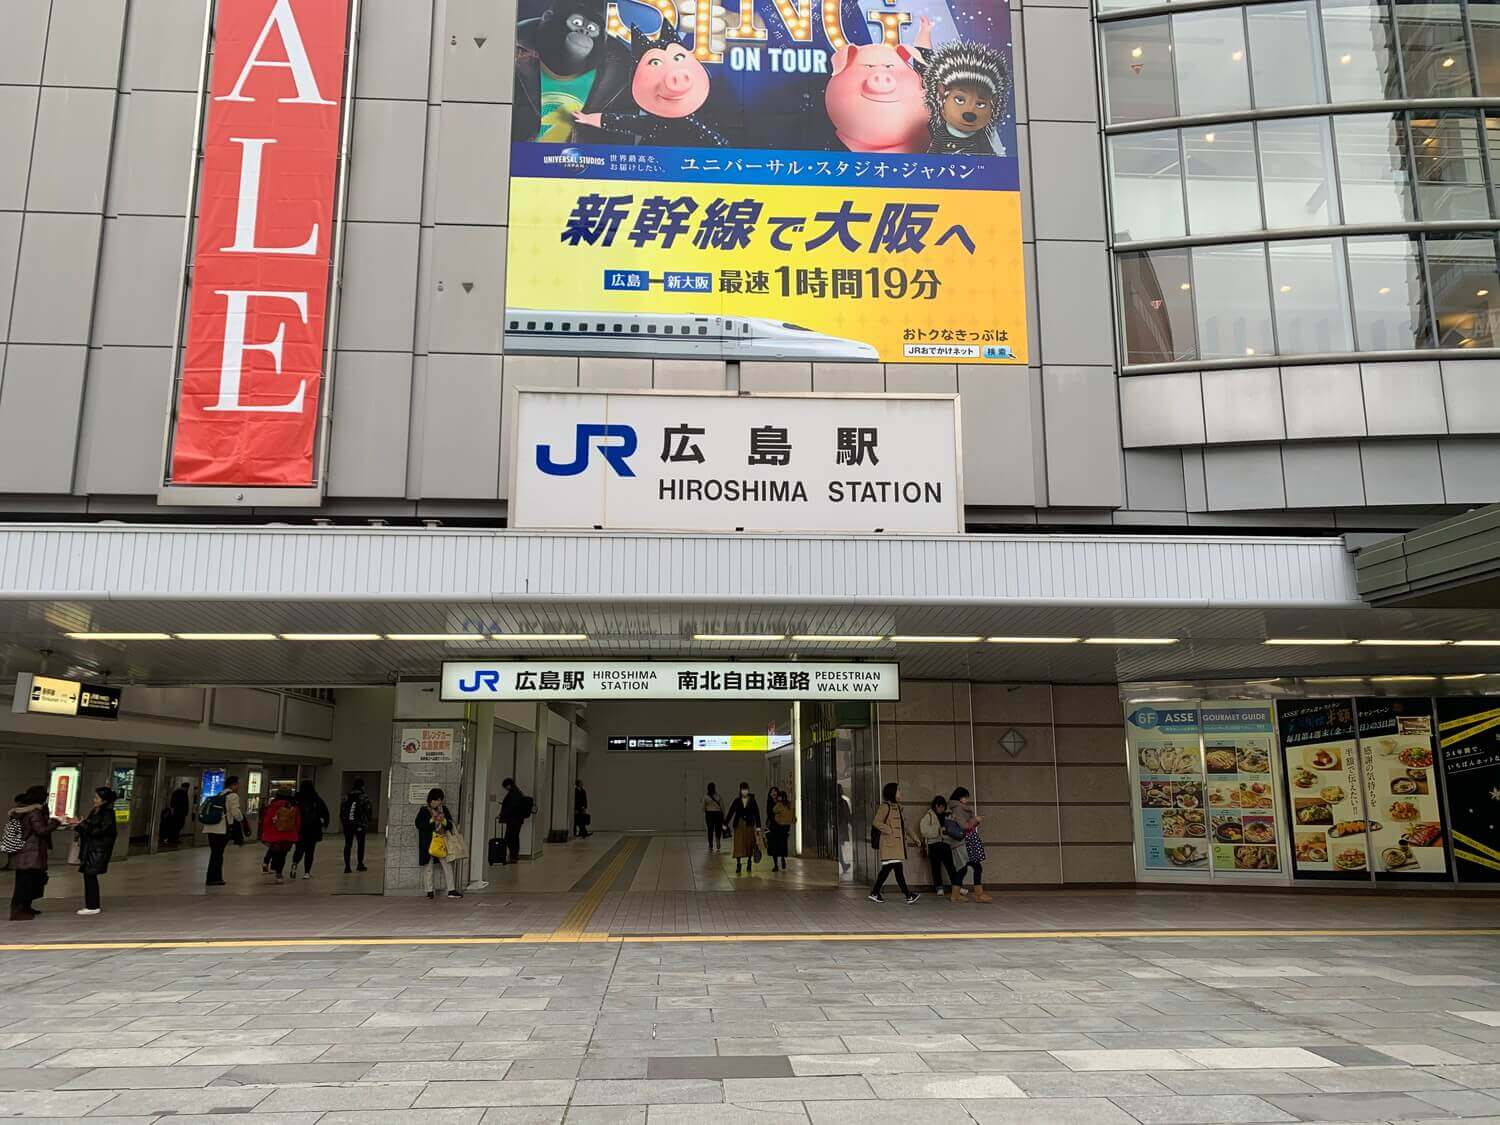 JR Hiroshima Station South Exit